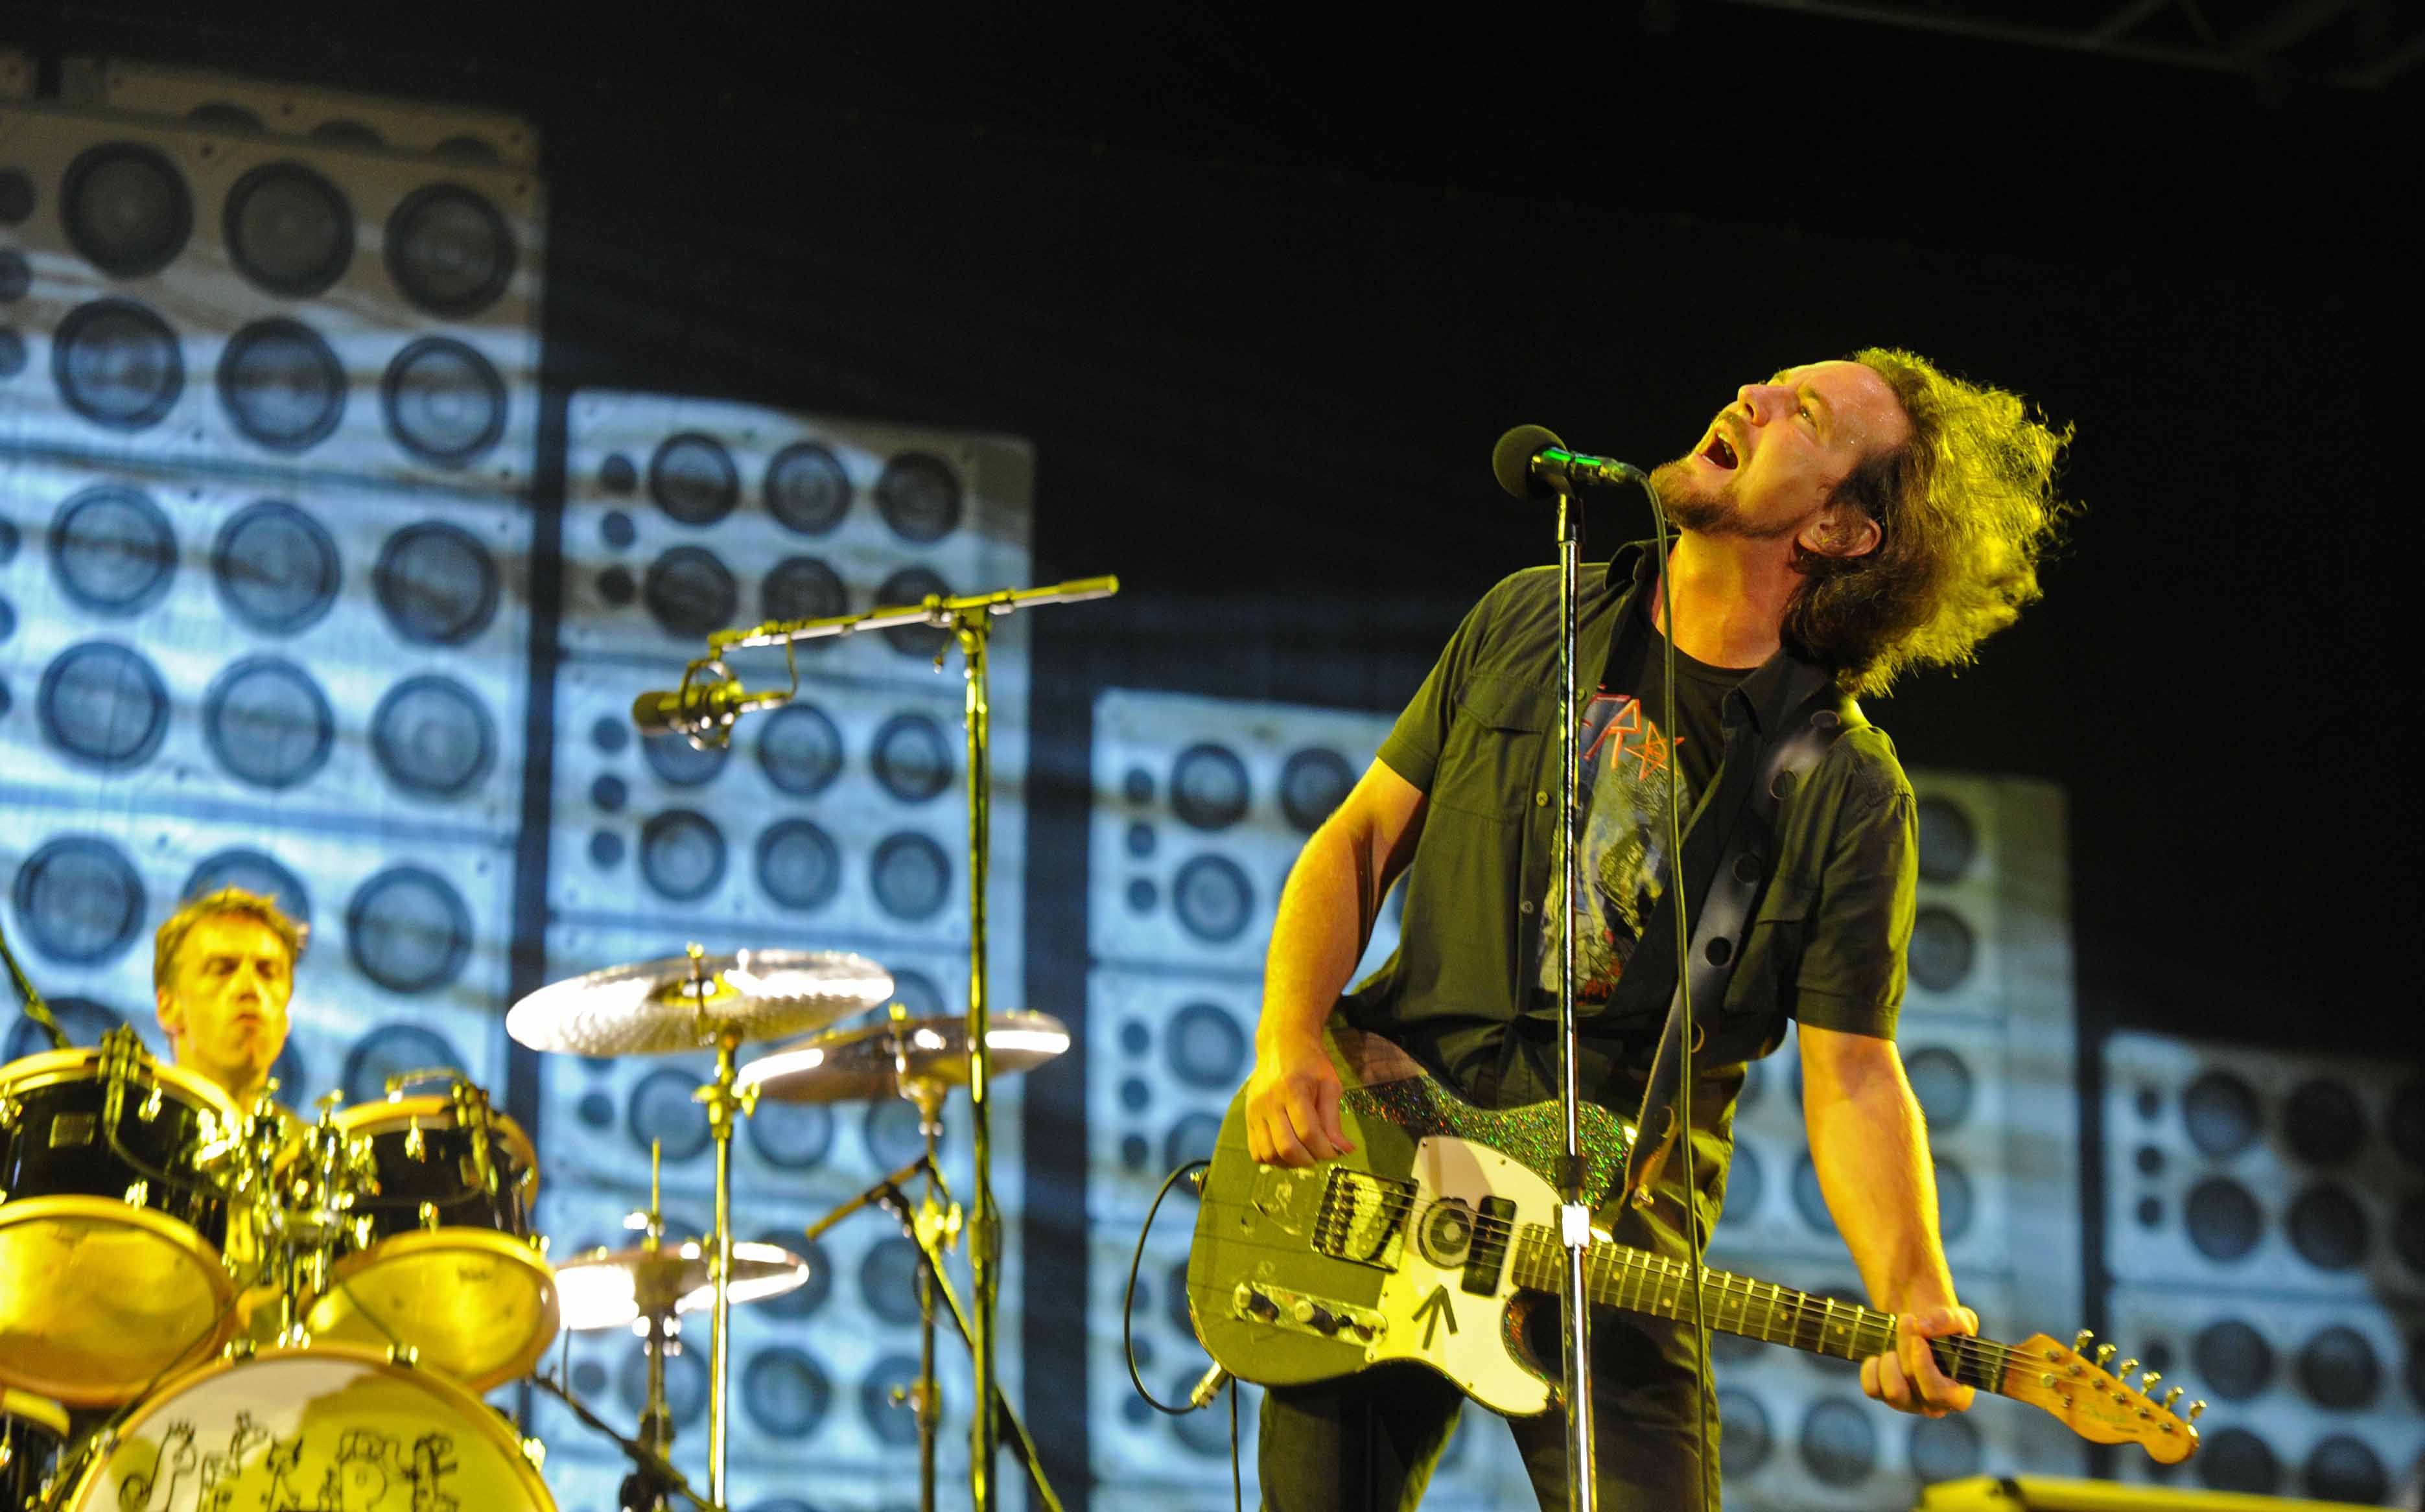 En el marco de su 20 aniversario, Pearl Jam hizo un repaso por su carrera con un concierto en Costa Rica en noviembre del 2011.